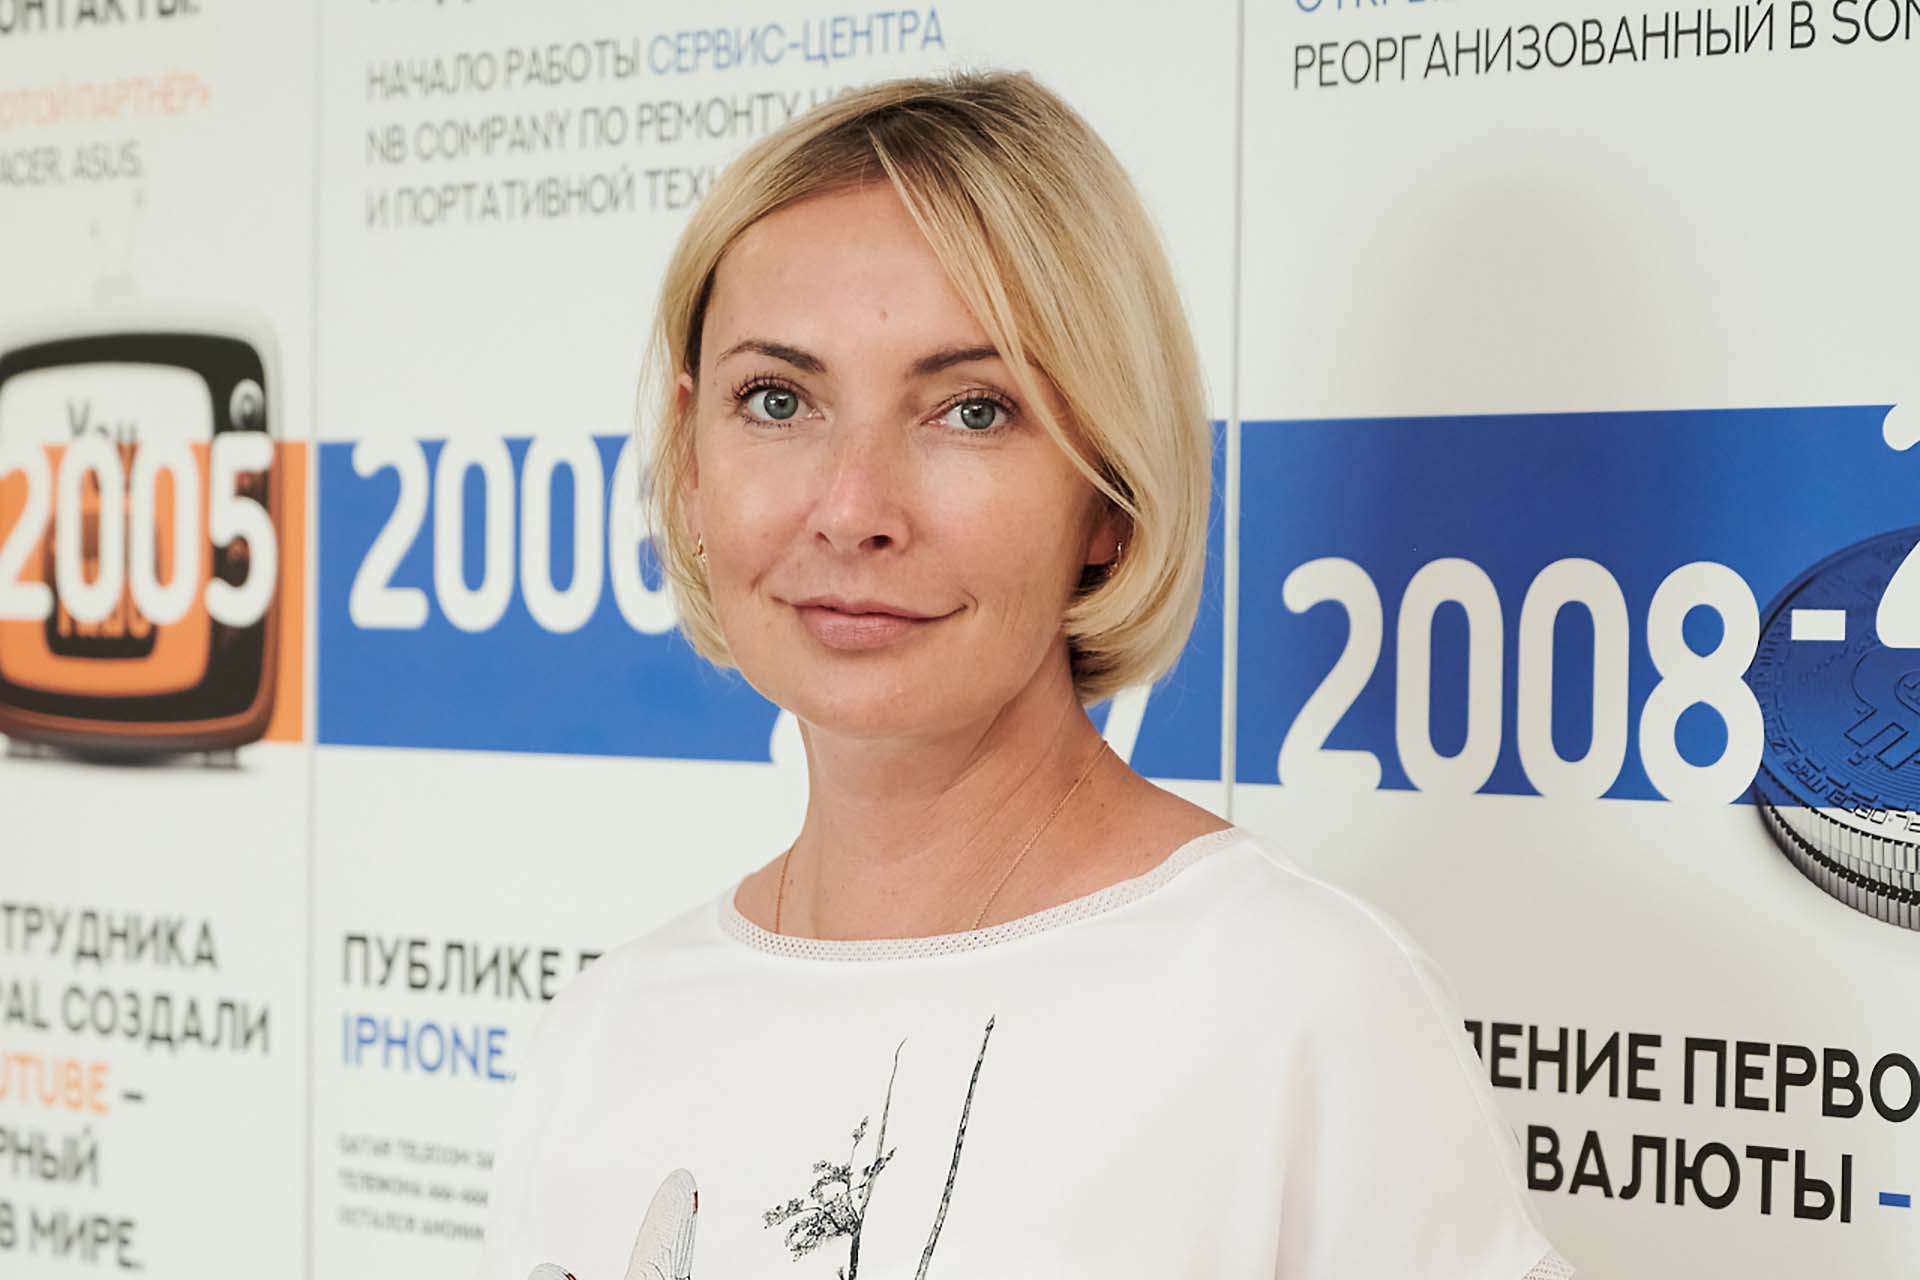 Надежда Ведерникова, директор по маркетингу группы компаний NBCom Group